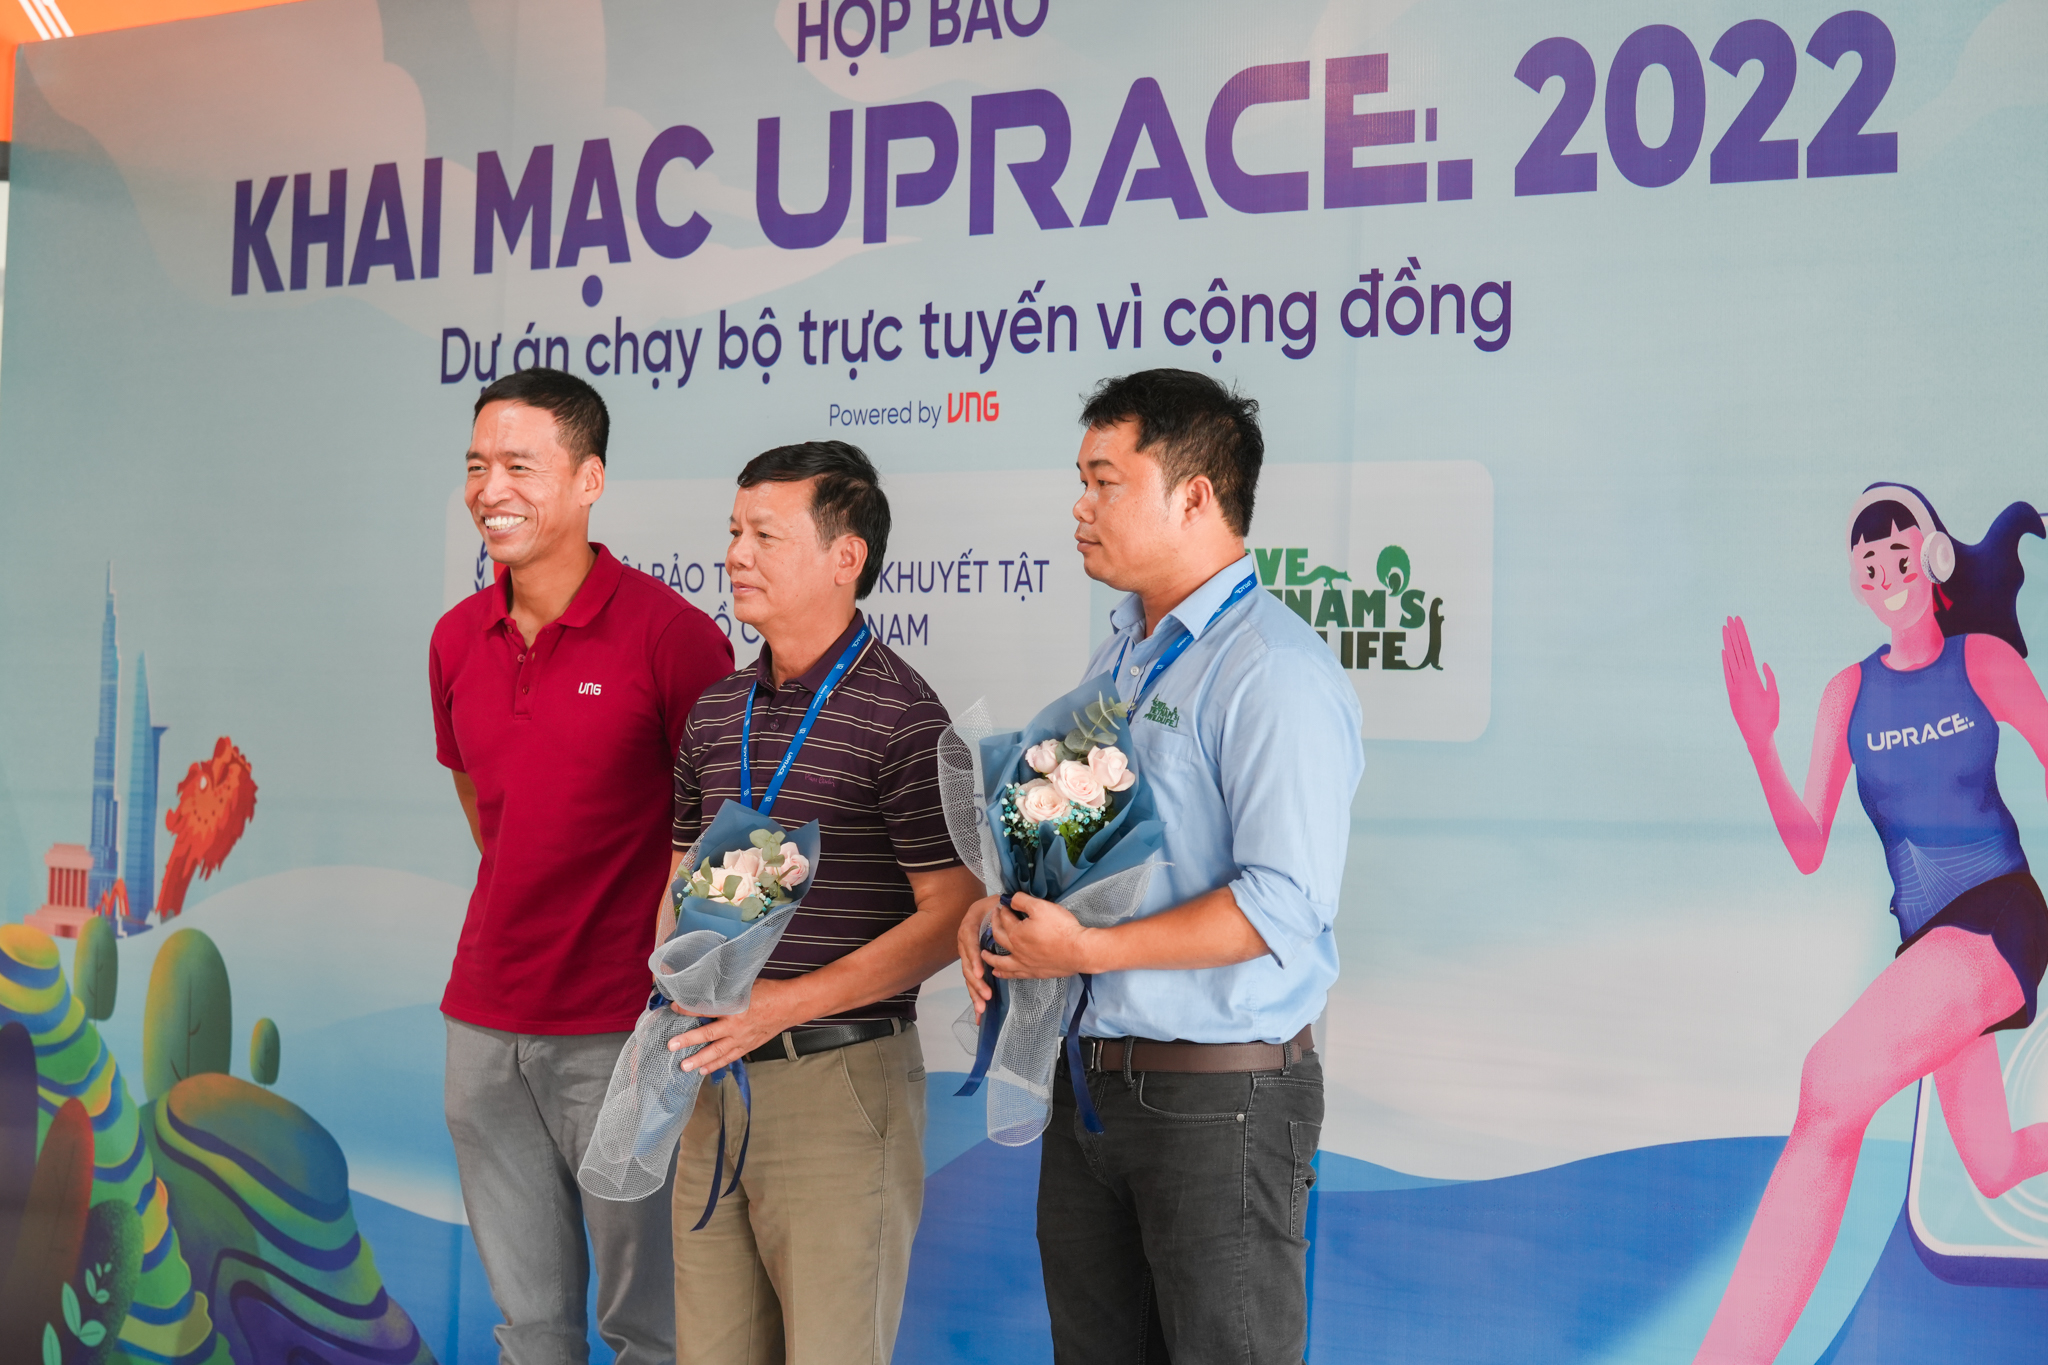 UpRace mùa 5, chạy vì người khuyết tật và thiên nhiên Việt Nam - DSC00213